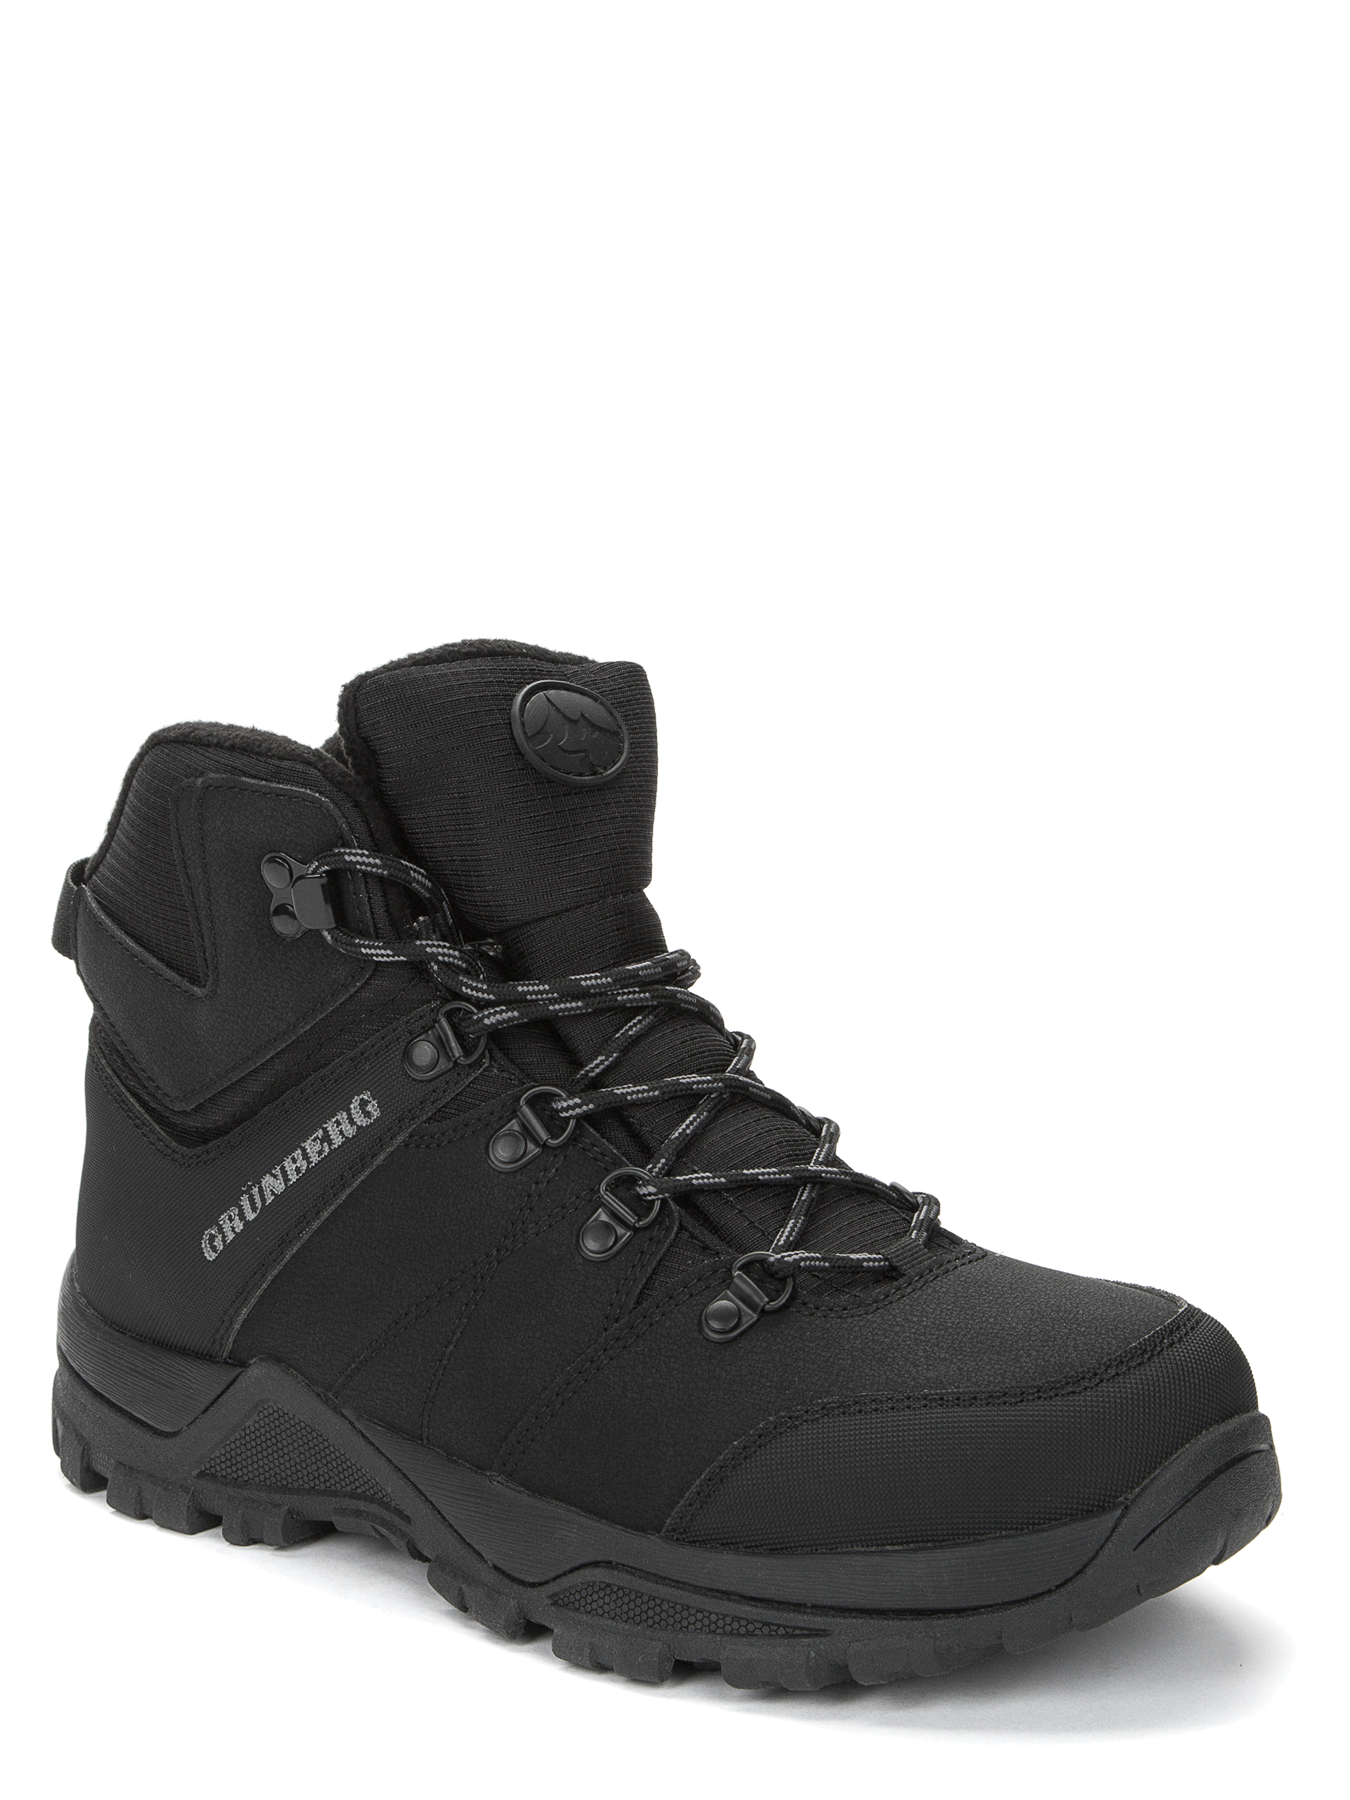 Ботинки Grunberg мужские, размер 45, черные, 138100/13-01